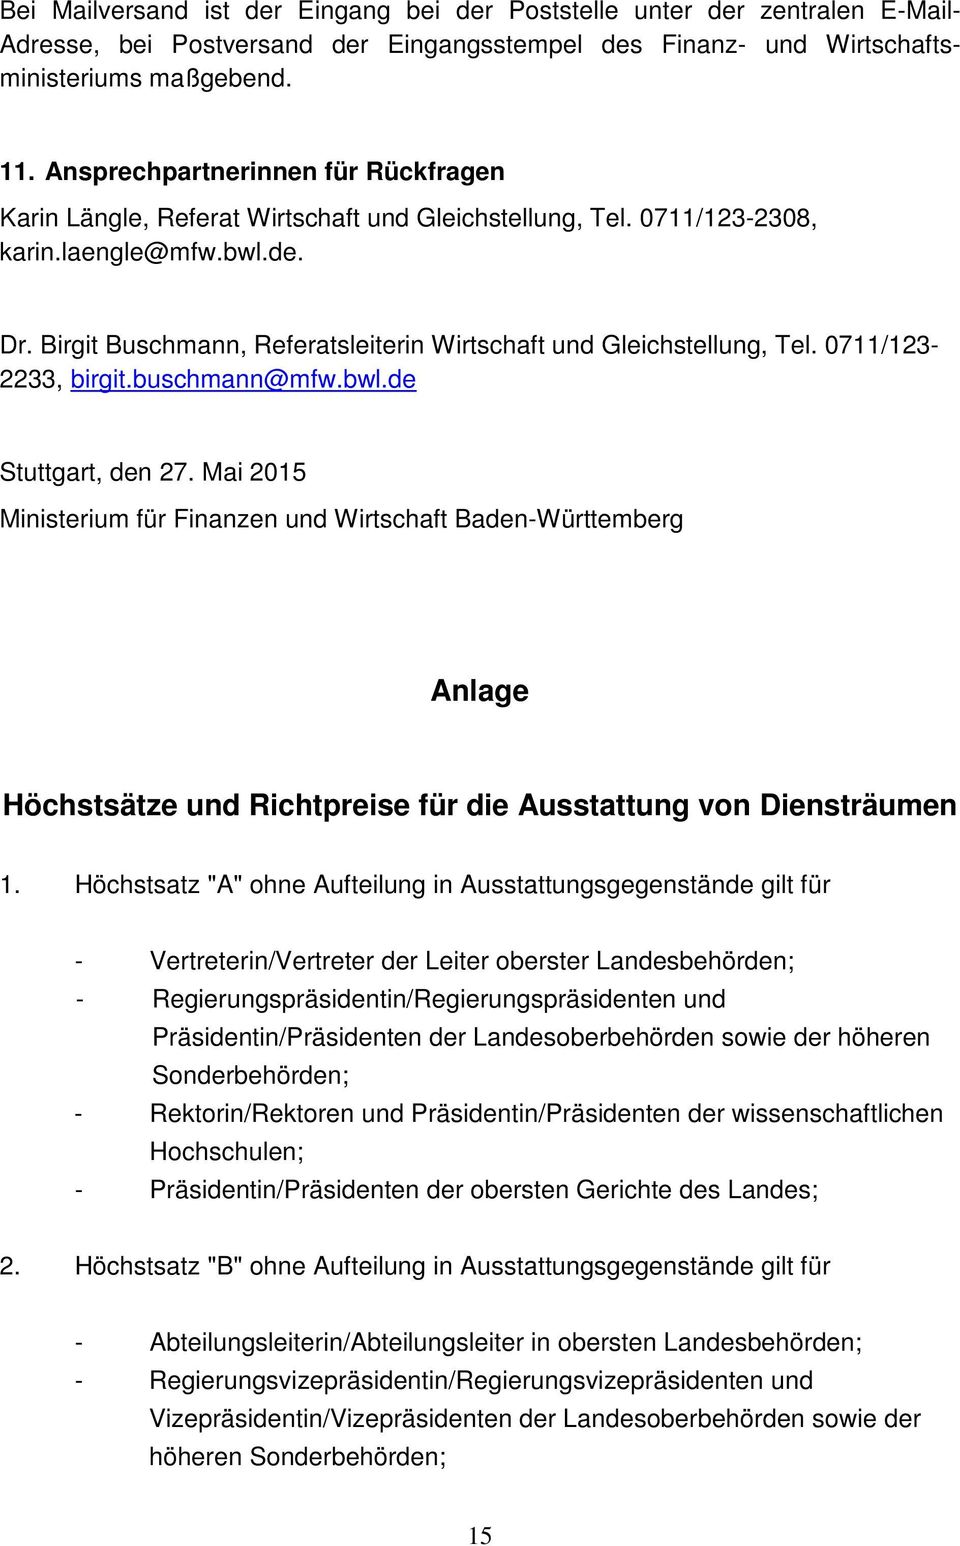 Birgit Buschmann, Referatsleiterin Wirtschaft und Gleichstellung, Tel. 0711/123-2233, birgit.buschmann@mfw.bwl.de Stuttgart, den 27.